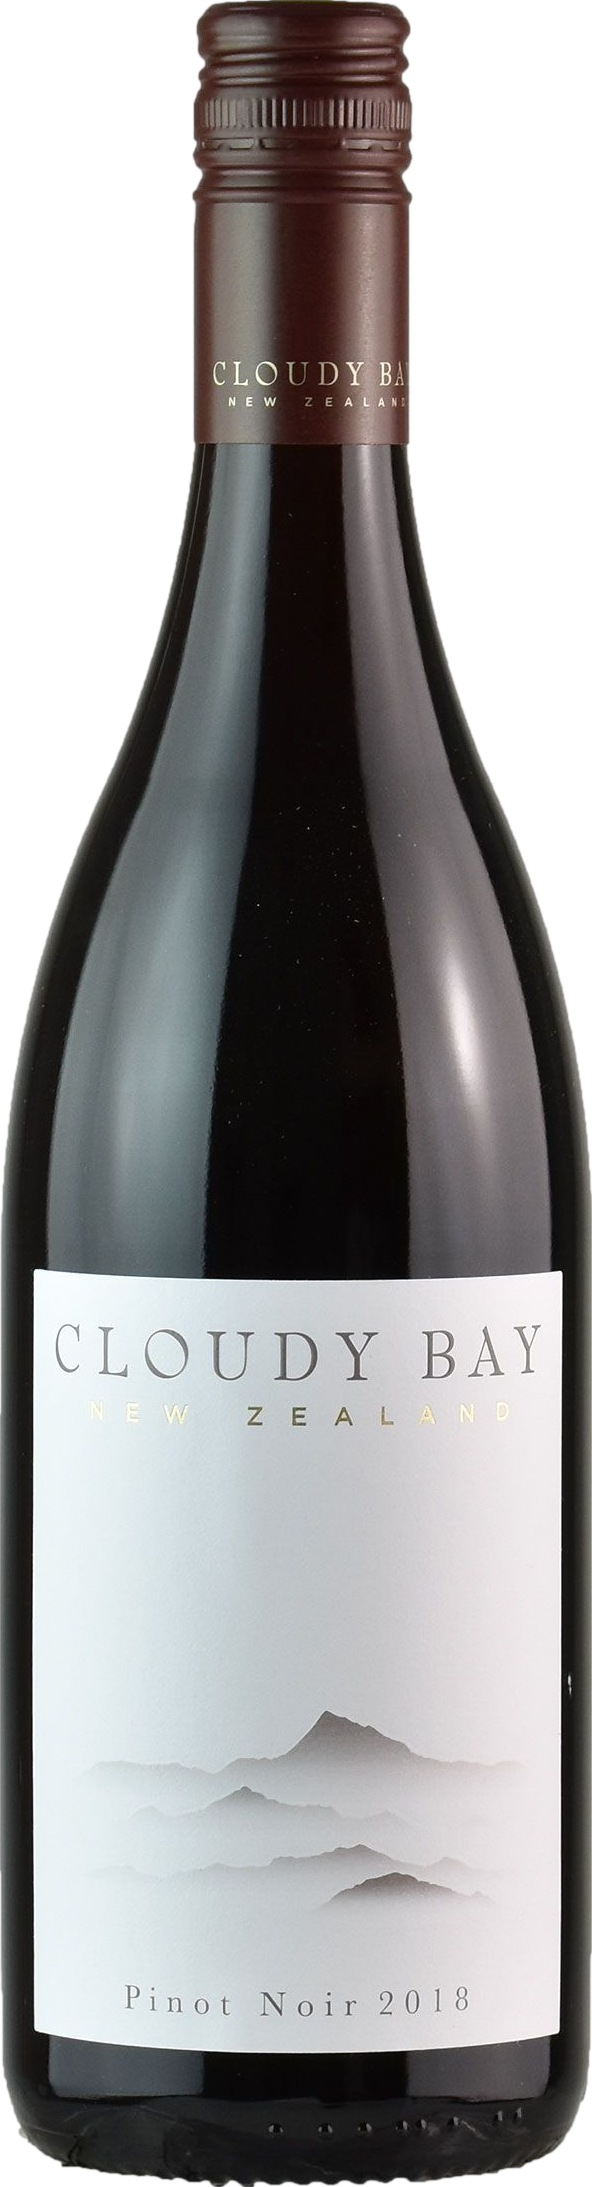 Cloudy Bay Marlborough Pinot Noir 2020 (New Zealand)